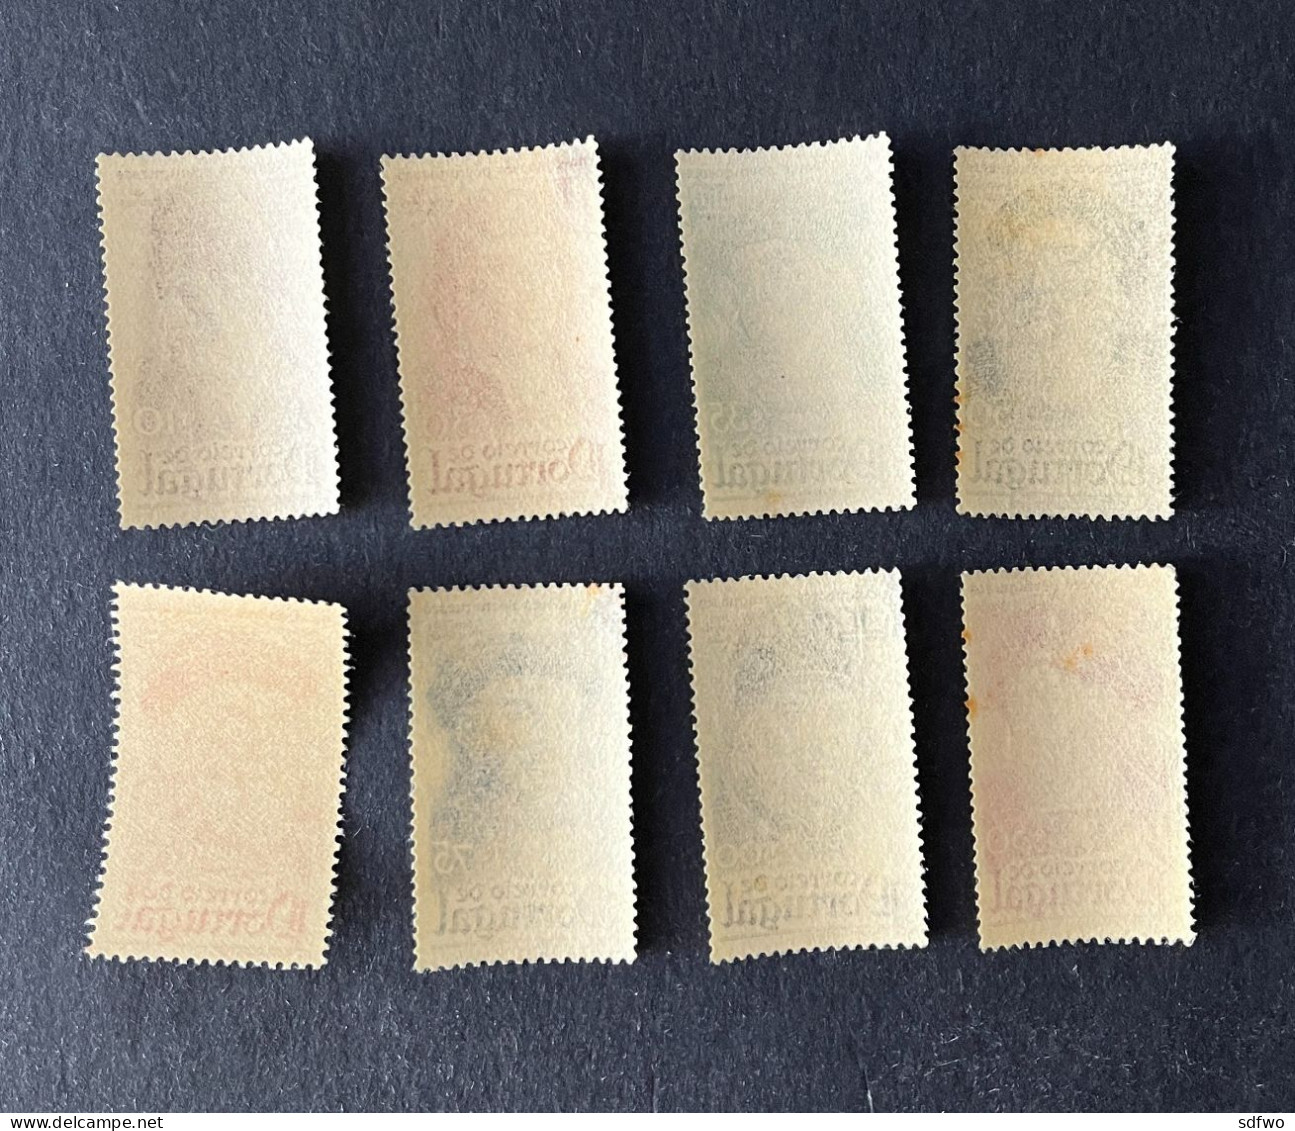 (T3) Portugal - 1945 Navigators Complete Set - Af. 644 To 651 - MNH (1$00, MH) - Unused Stamps